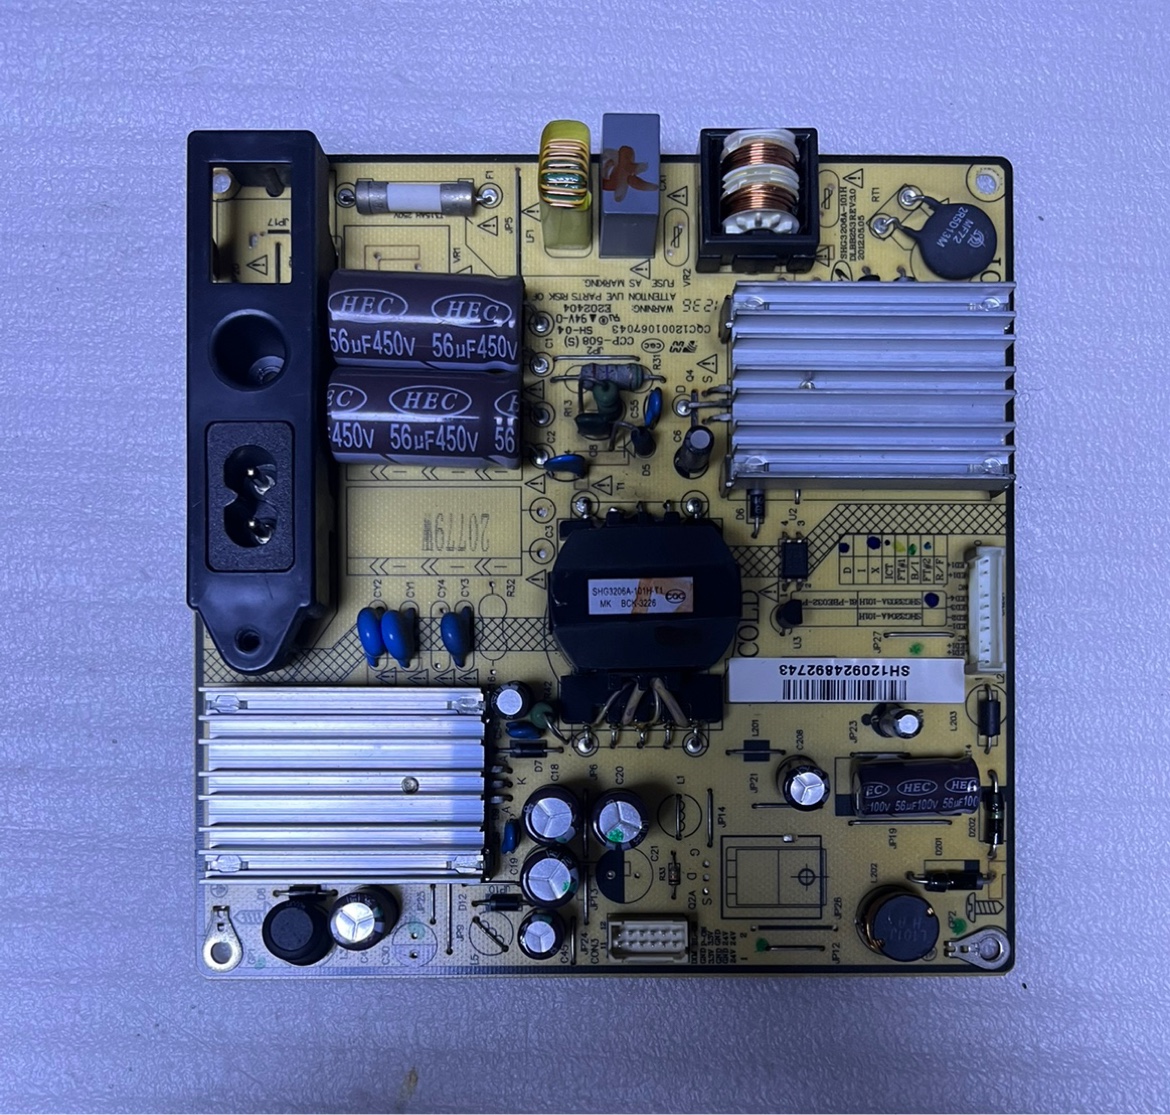 先锋LED-32B300 电源板 SHG3203A-101H 电子元器件市场 PCB电路板/印刷线路板 原图主图